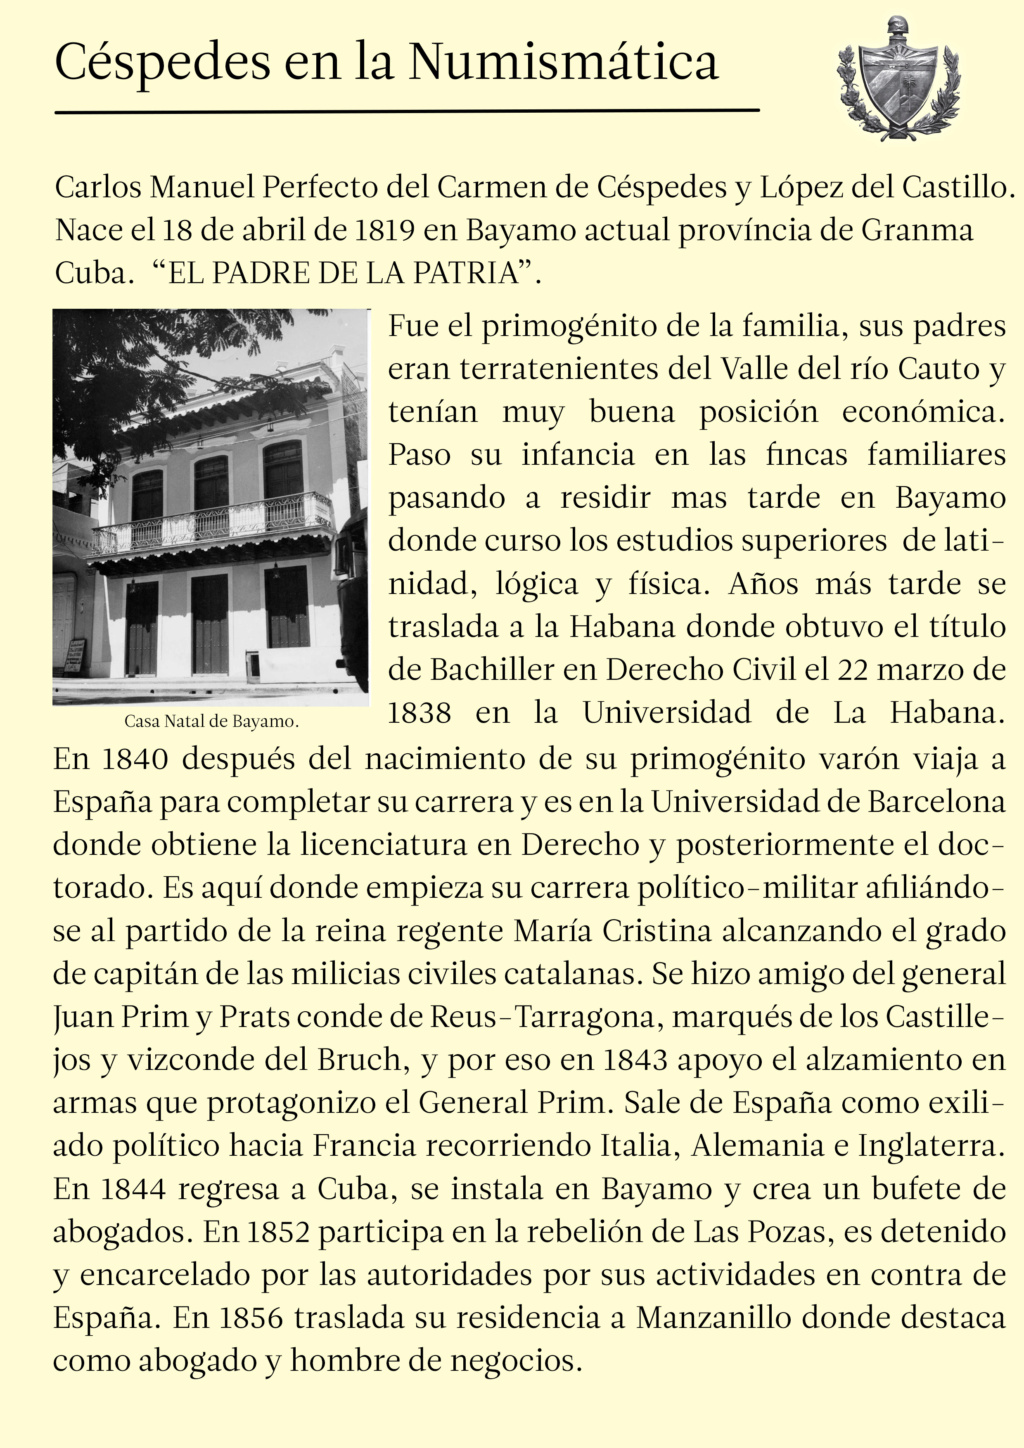 Carlos Manuel de Cespedes en la Numismatica de Cuba 211